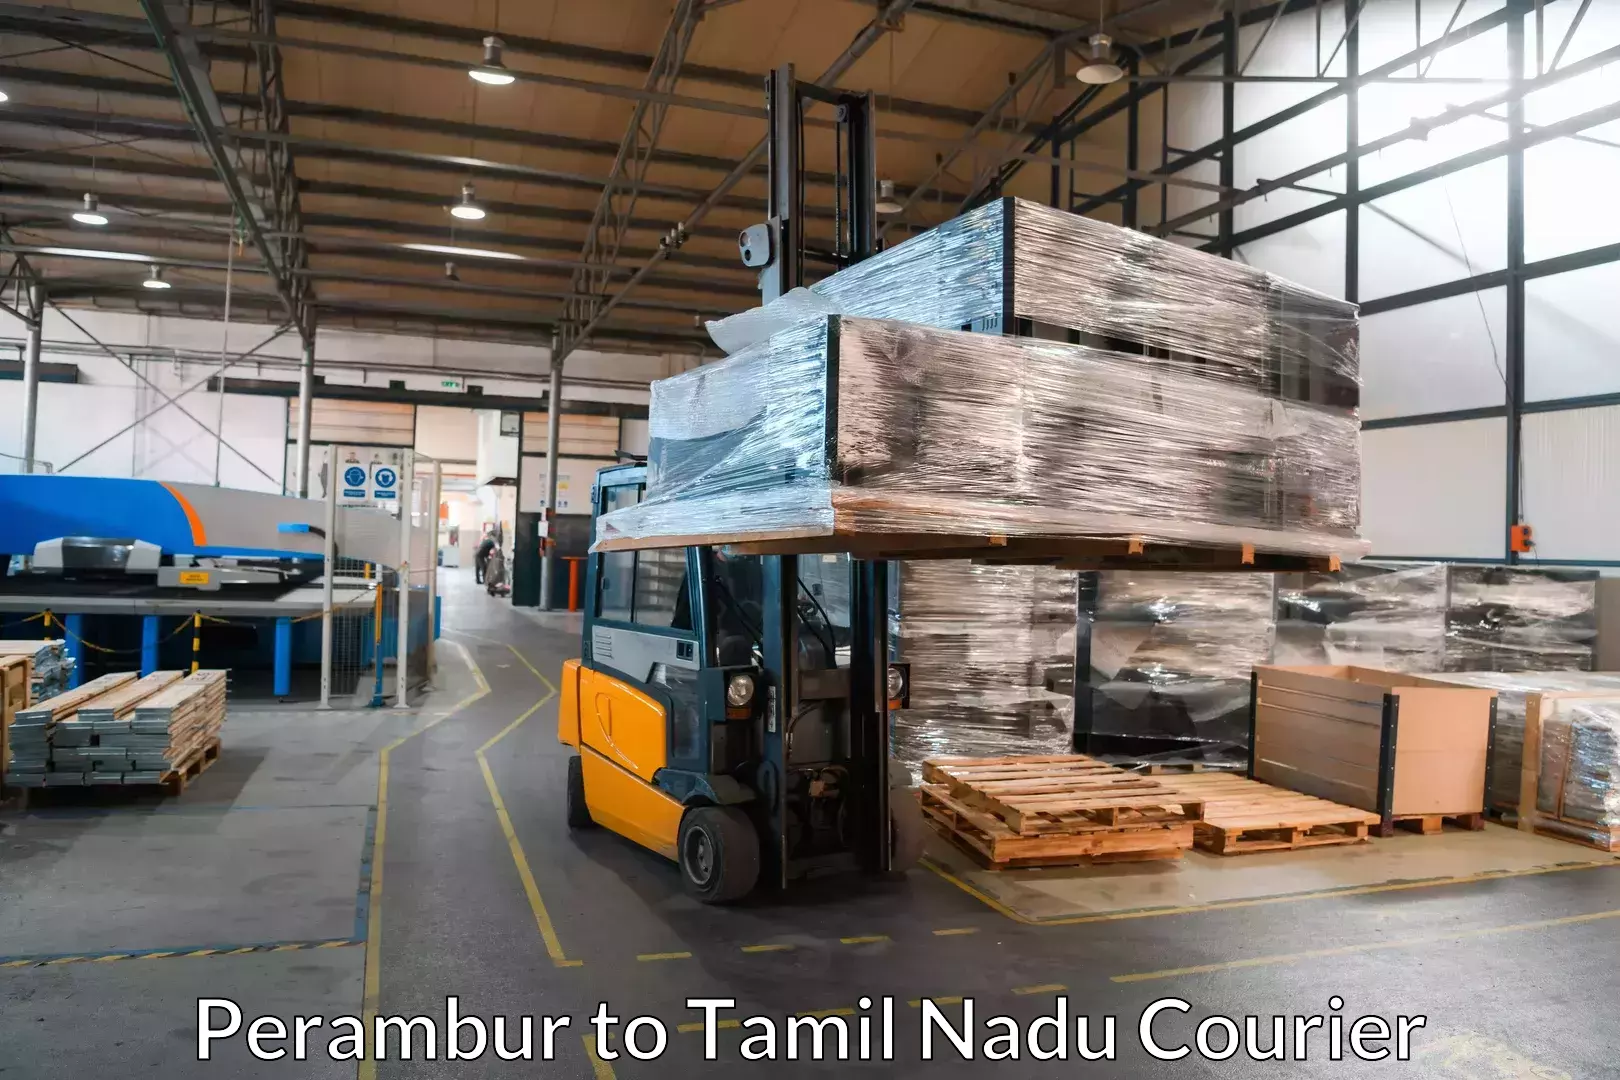 Furniture moving specialists Perambur to Tirupur